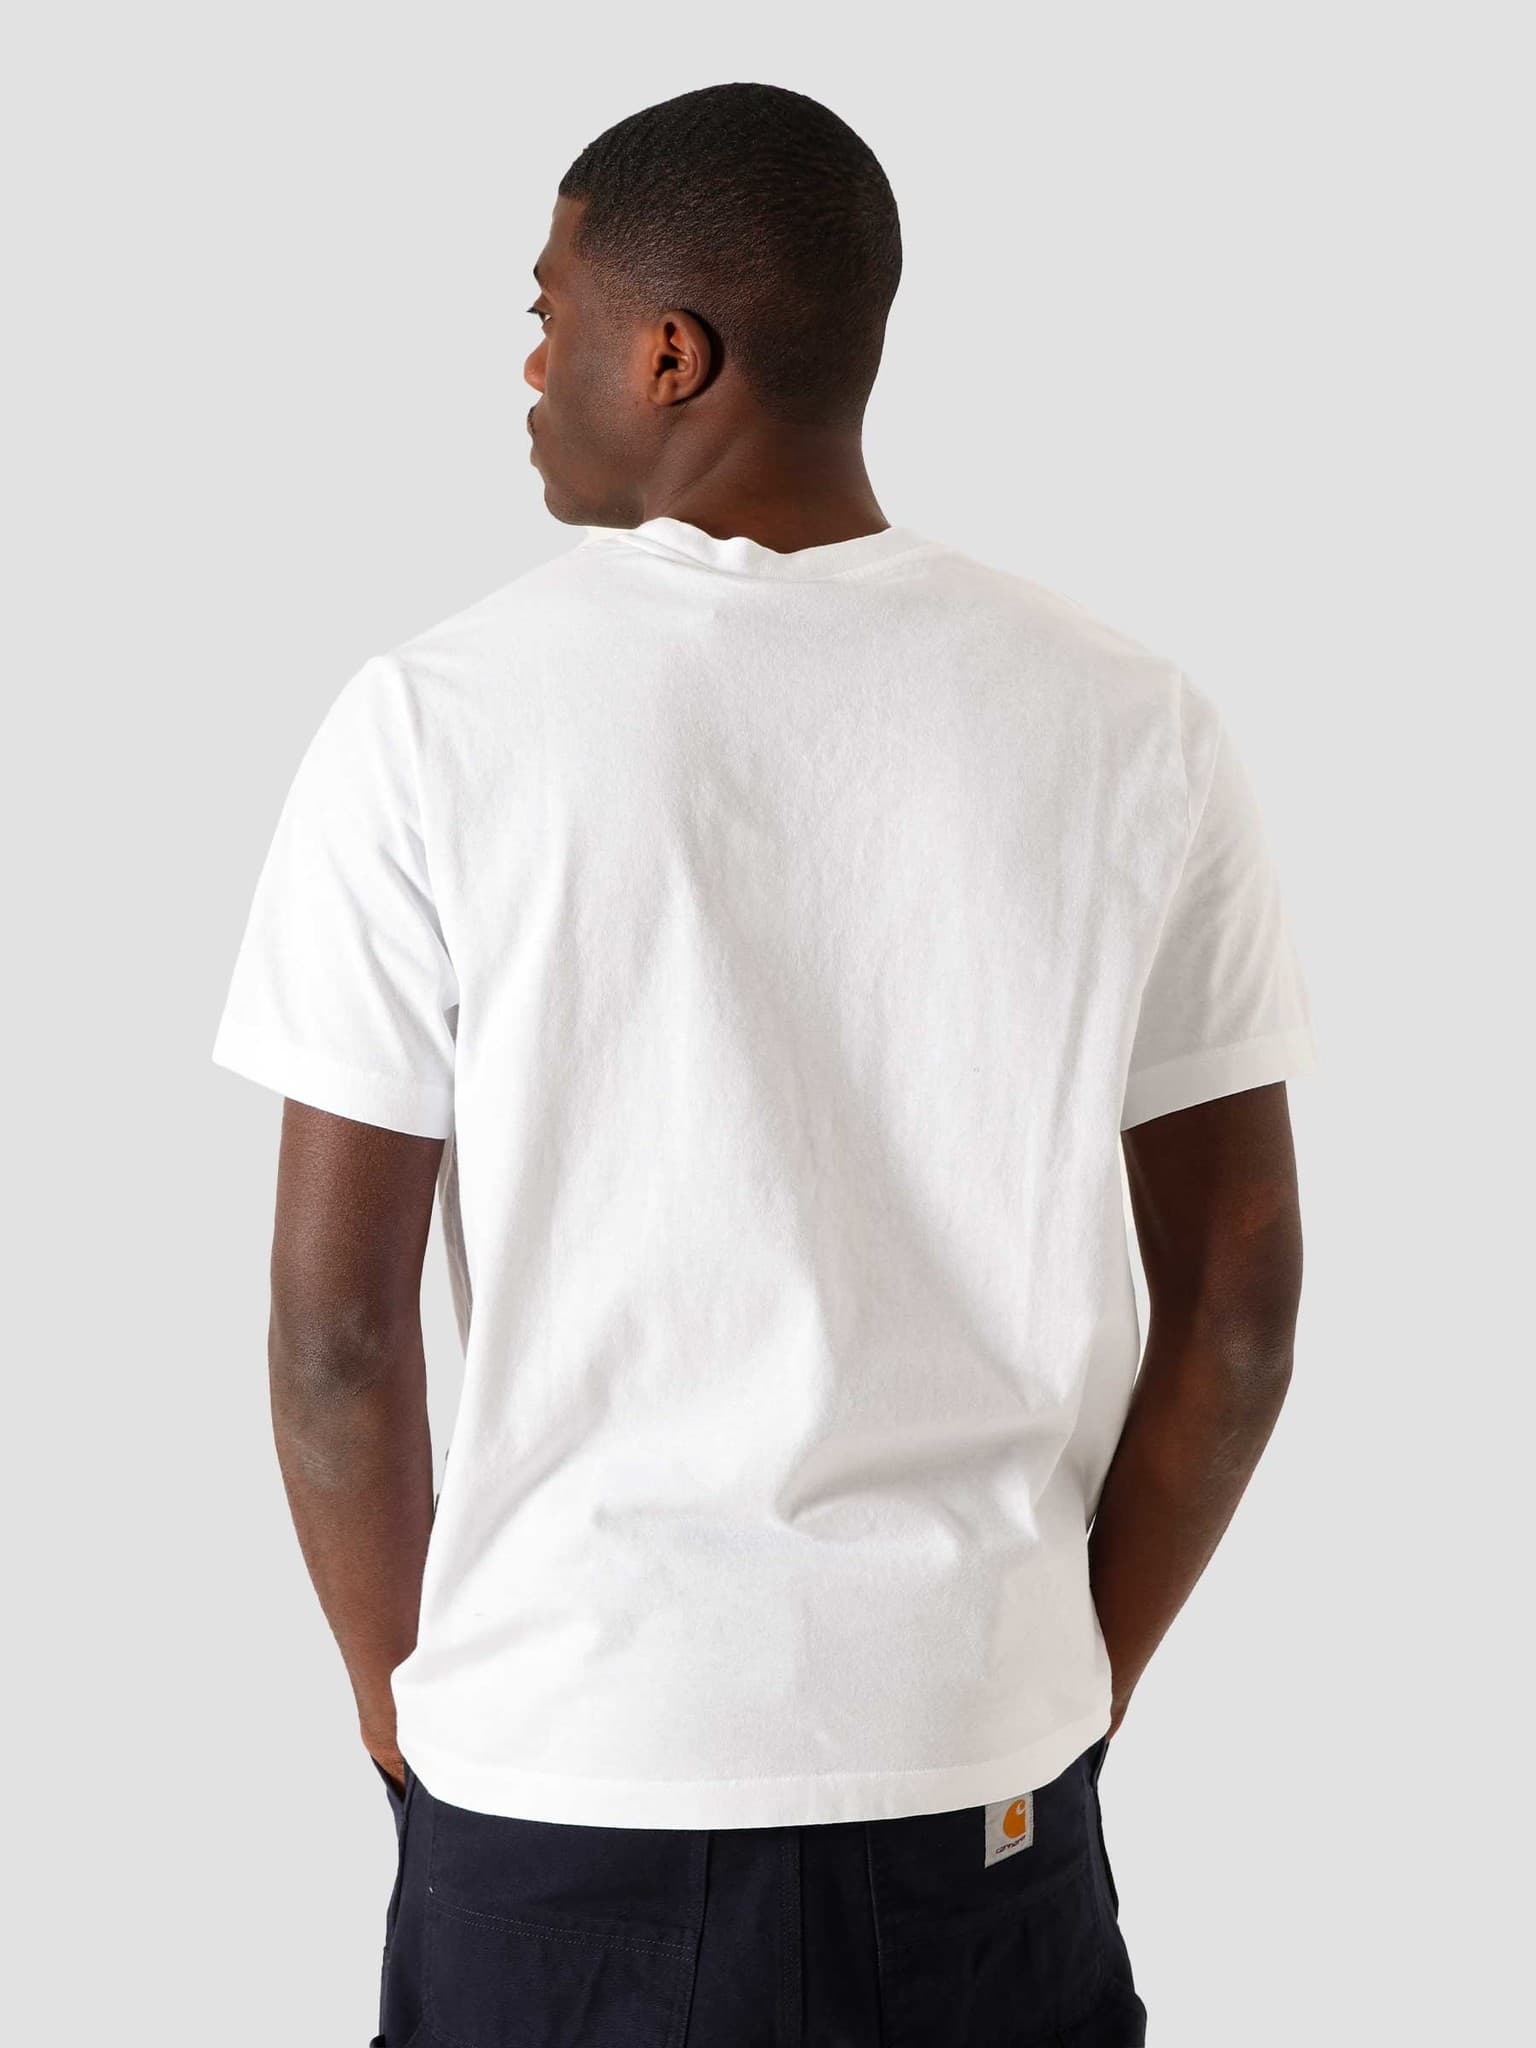 Too Loud T-Shirt White 45000